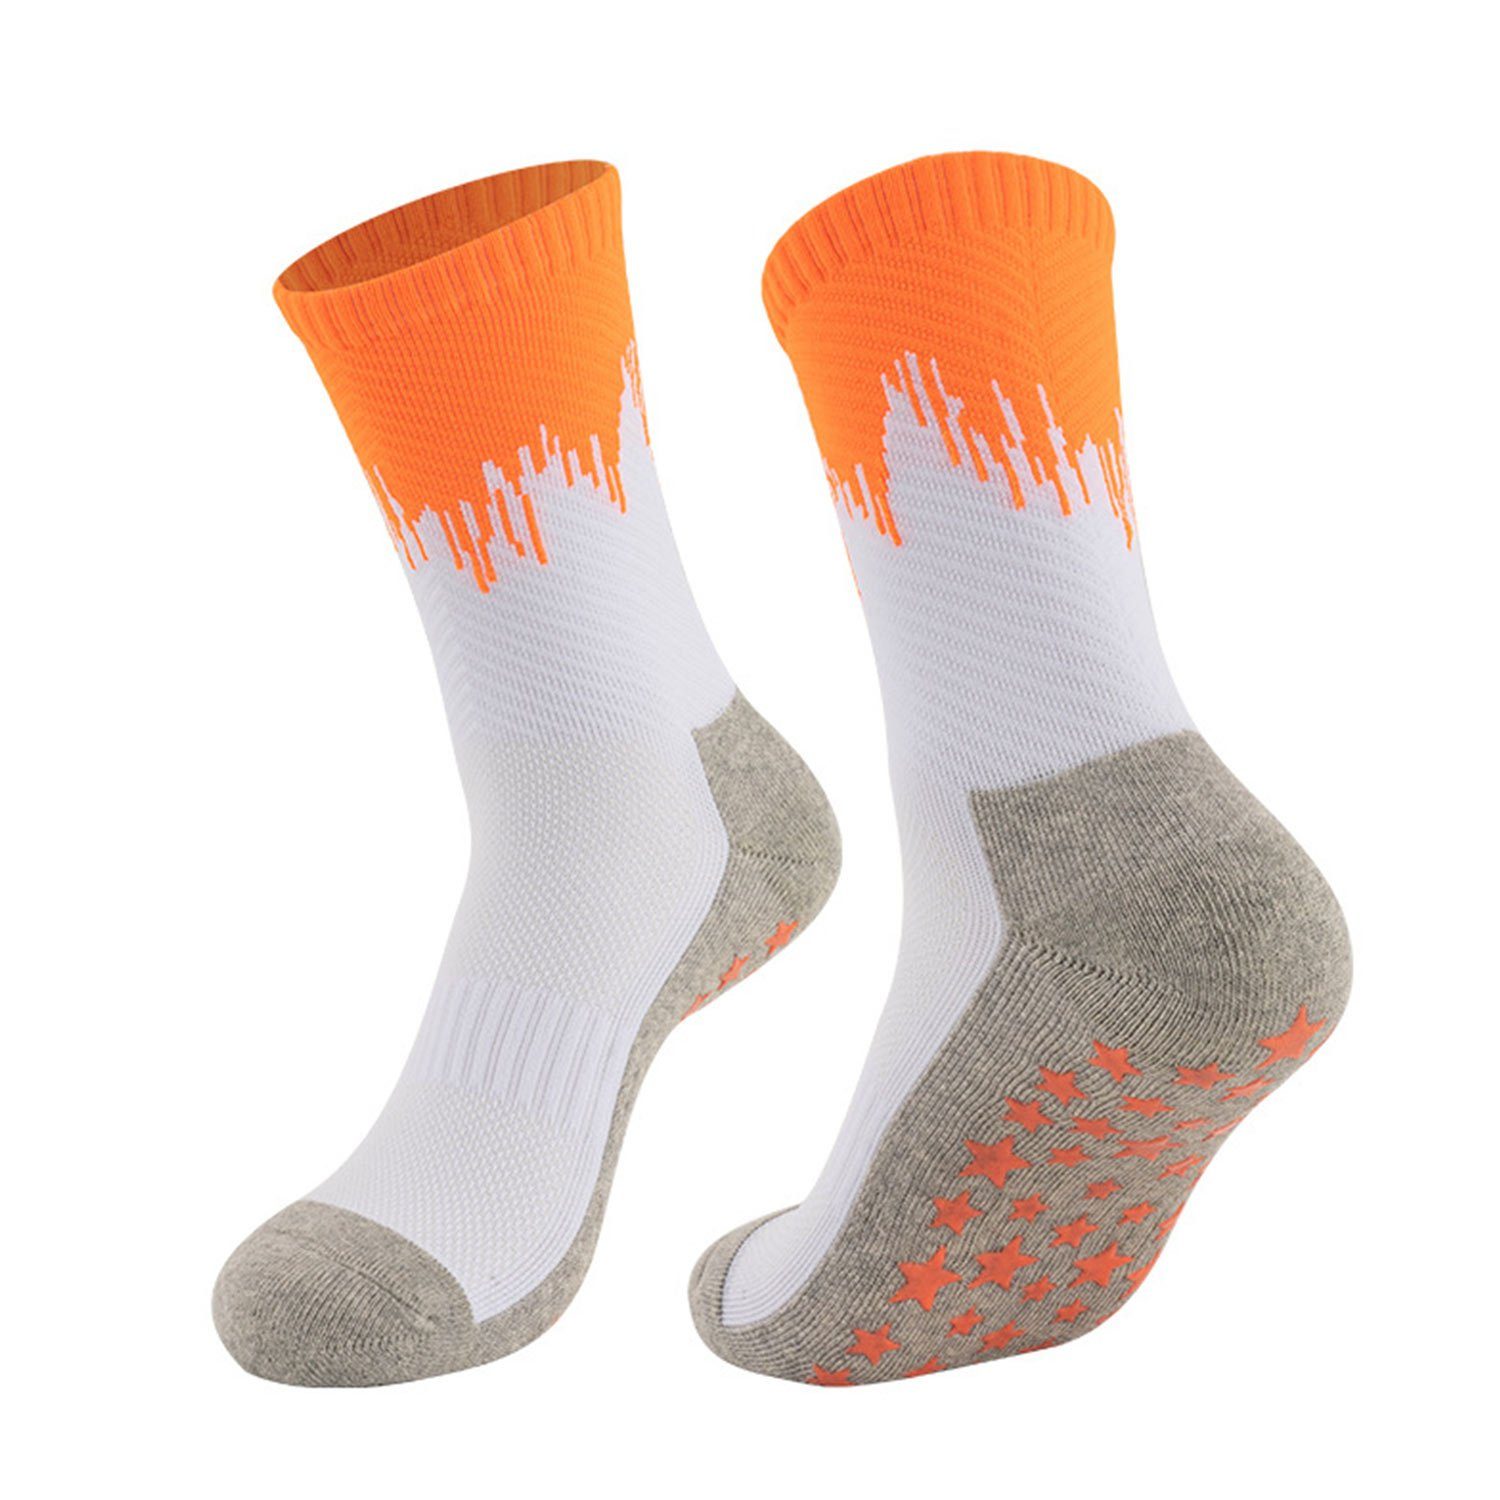 MAGICSHE Kniestrümpfe Fußballsocken für Erwachsene mit Gewindebündchen Verdickter Handtuchboden für sportlichen Schutz der Füße Weiß Orange